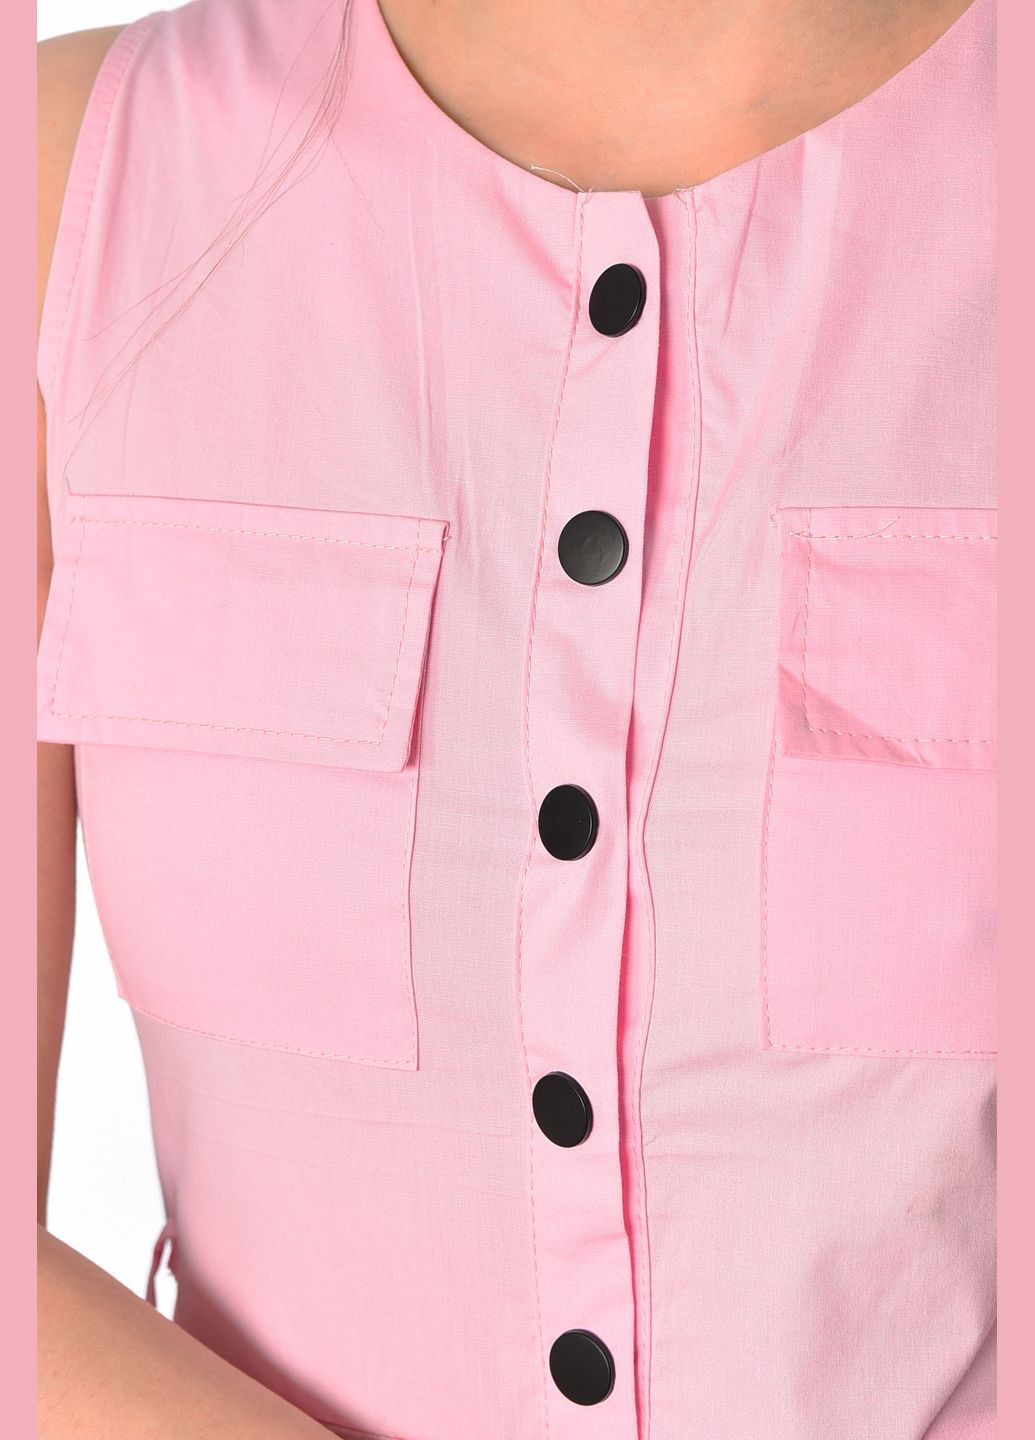 Комбинезон женский розового цвета Let's Shop комбинезон-брюки рисунок розовый вечерний полиэстер